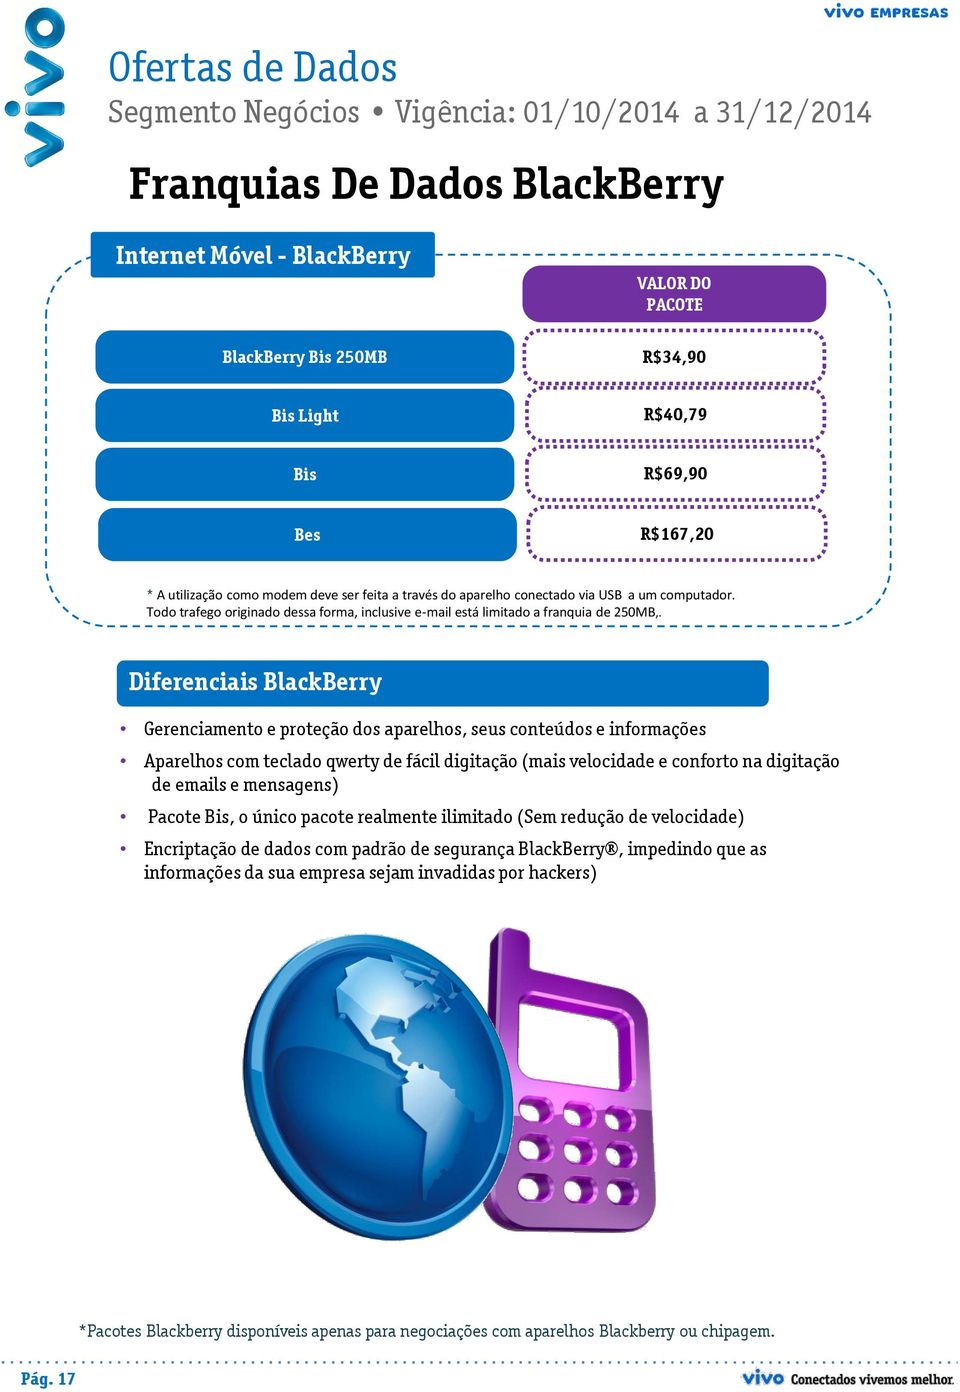 Diferenciais BlackBerry Gerenciamento e proteção dos aparelhos, seus conteúdos e informações Aparelhos com teclado qwerty de fácil digitação (mais velocidade e conforto na digitação de emails e